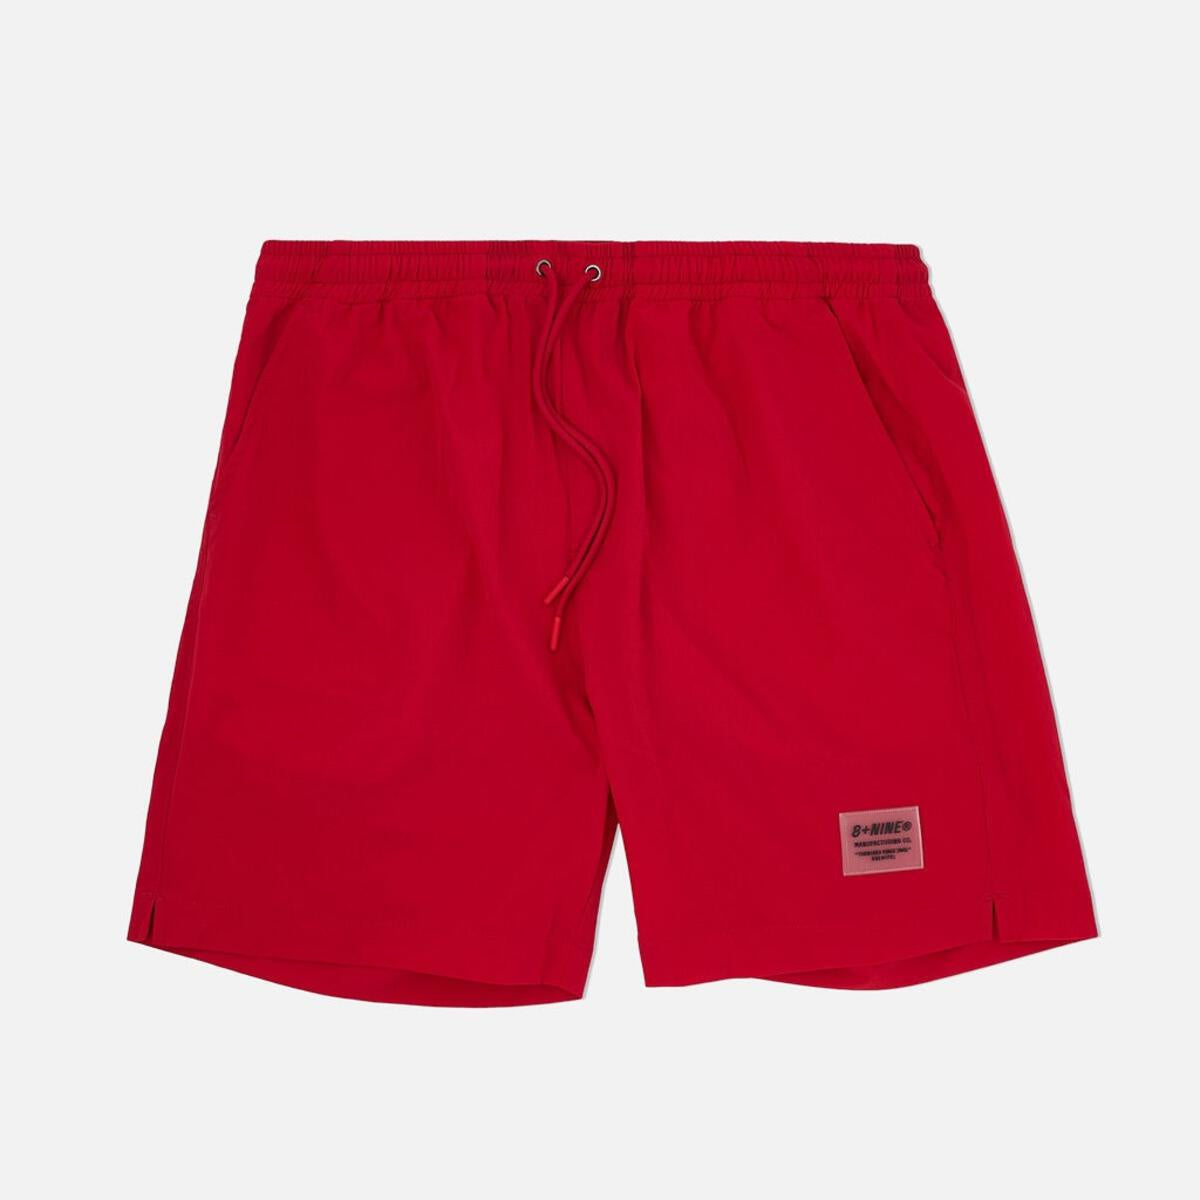 8&9 Red Vibe Shorts (SHVIBRED)